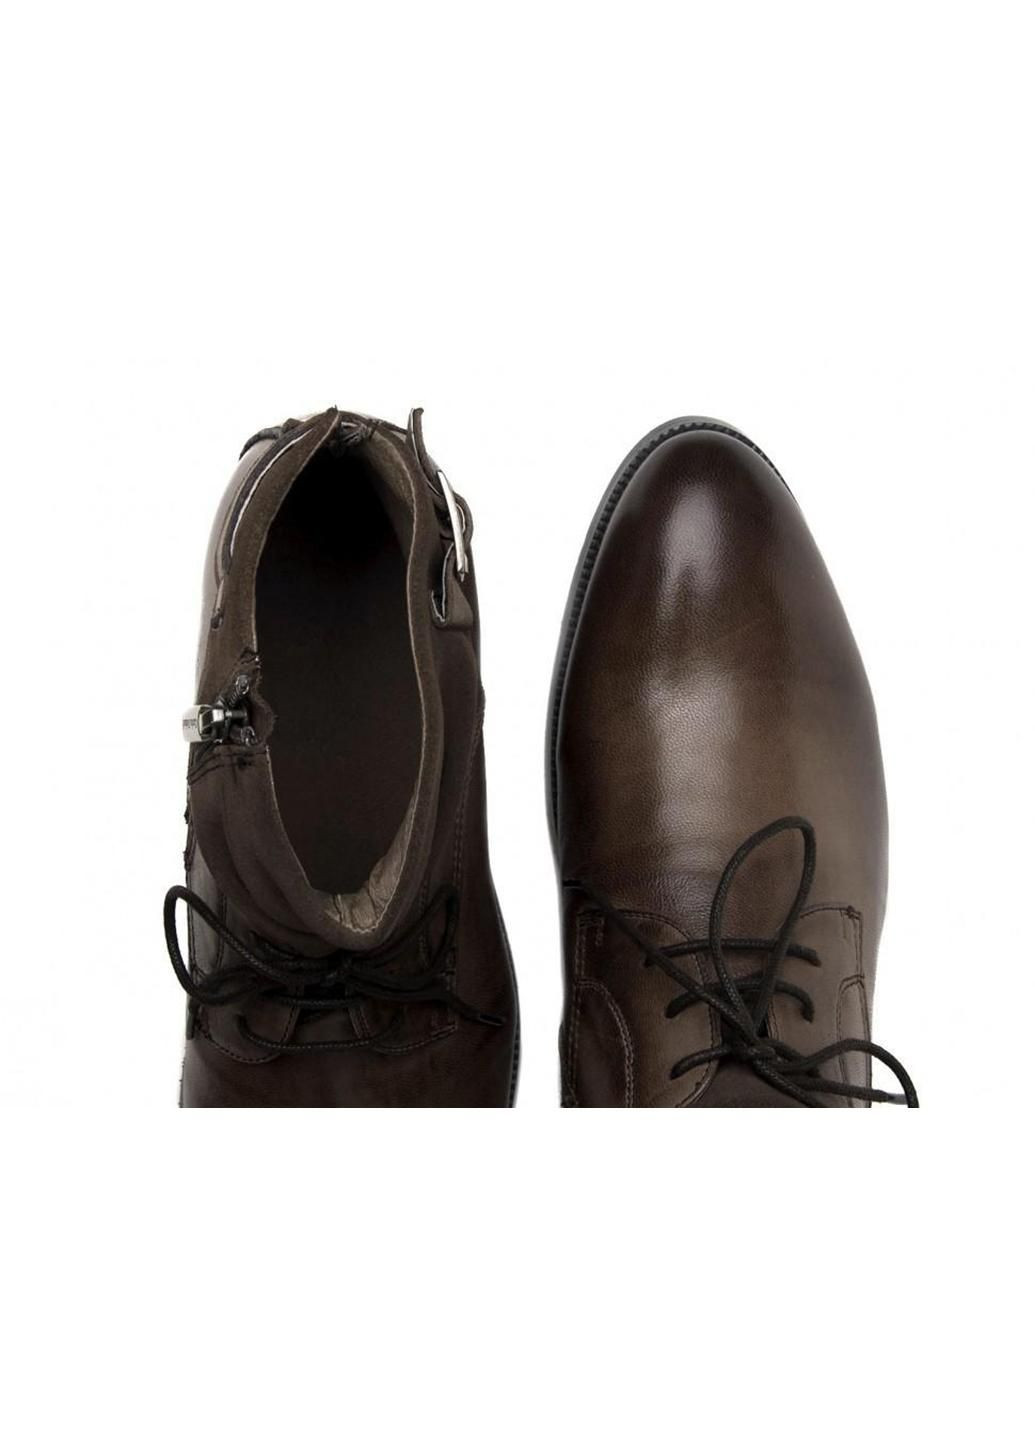 Коричневые зимние ботинки 7124507 цвет коричневый Carlo Delari